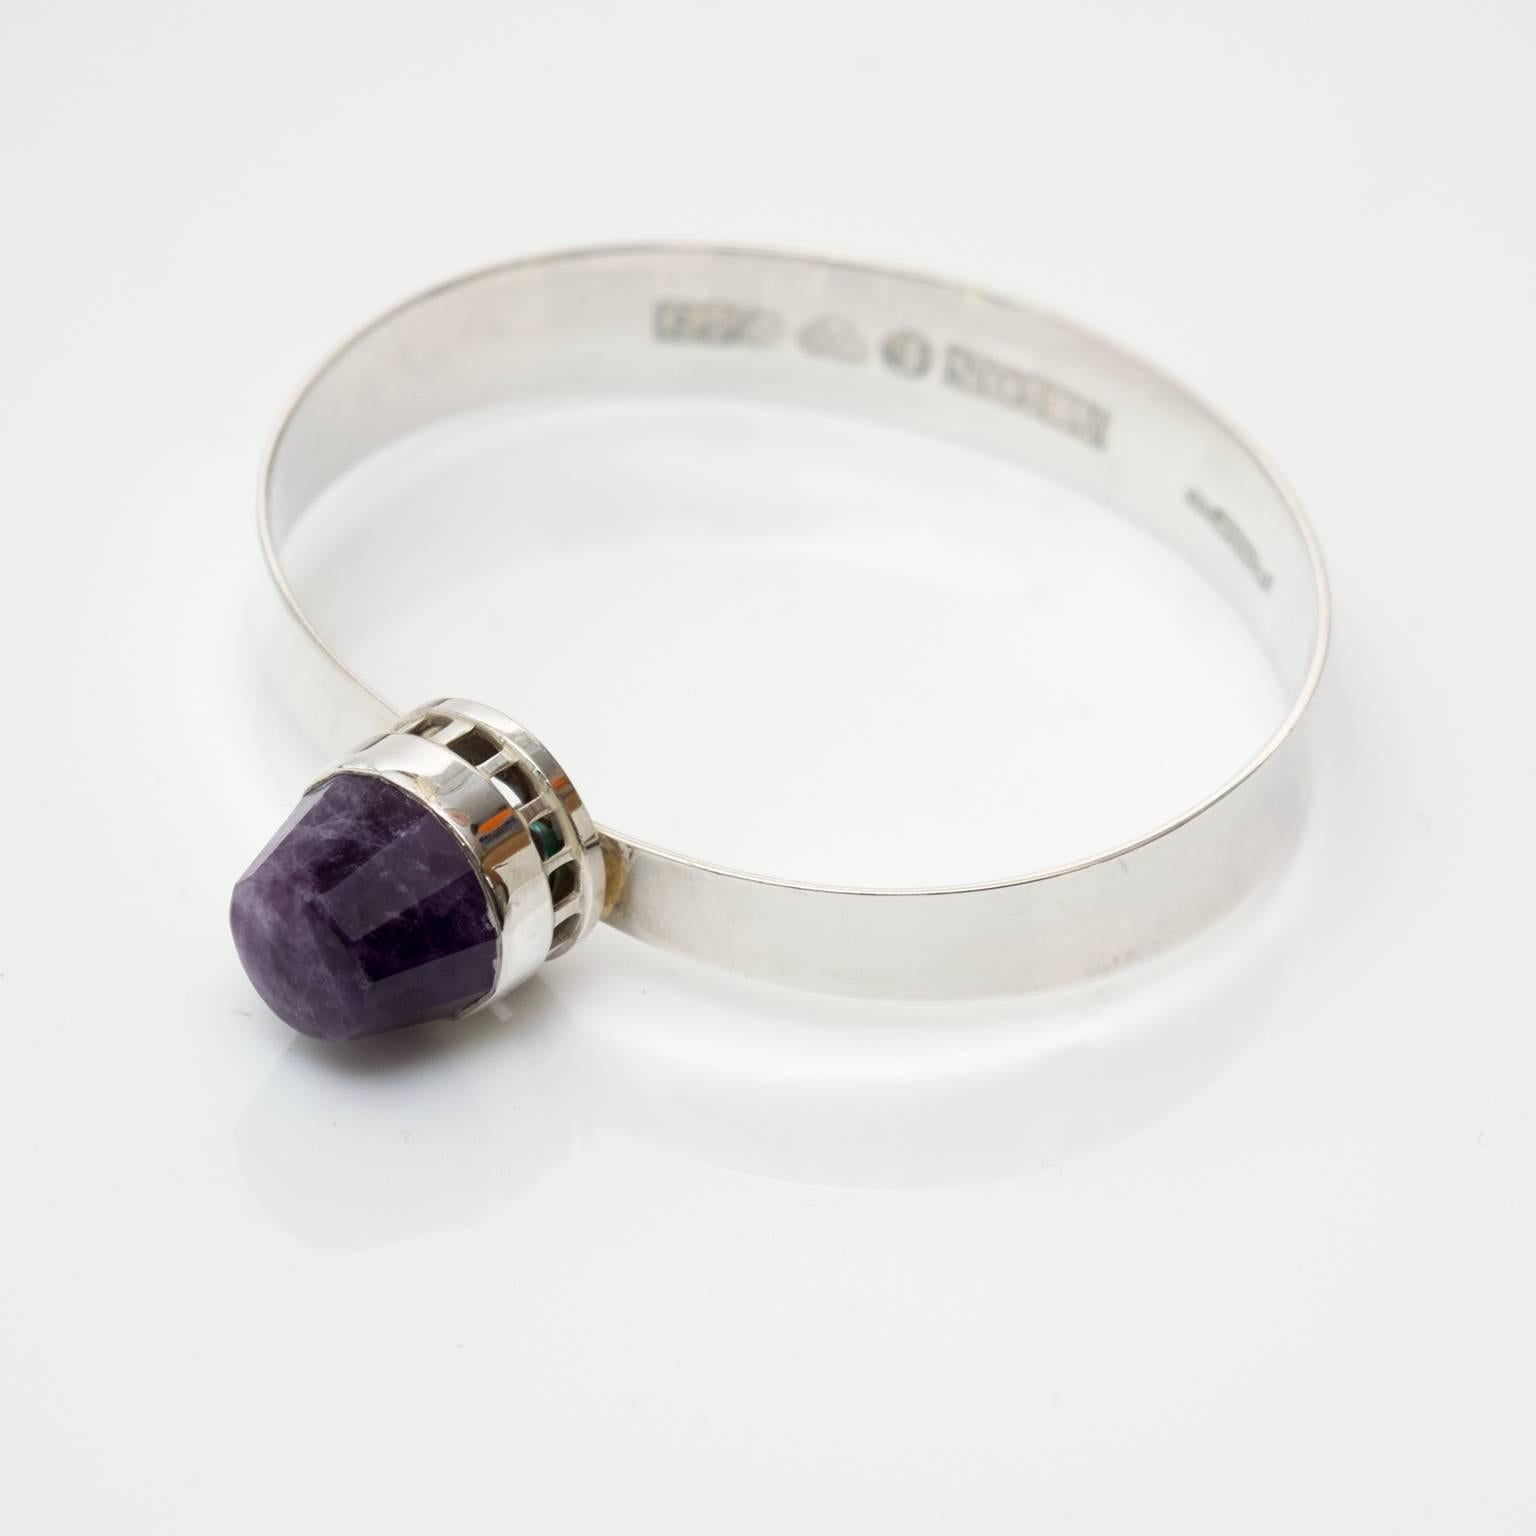 Skandinavisch-modernes Armband aus Sterlingsilber mit einem facettierten lilafarbenen Edelstein. Designer-Stempel 